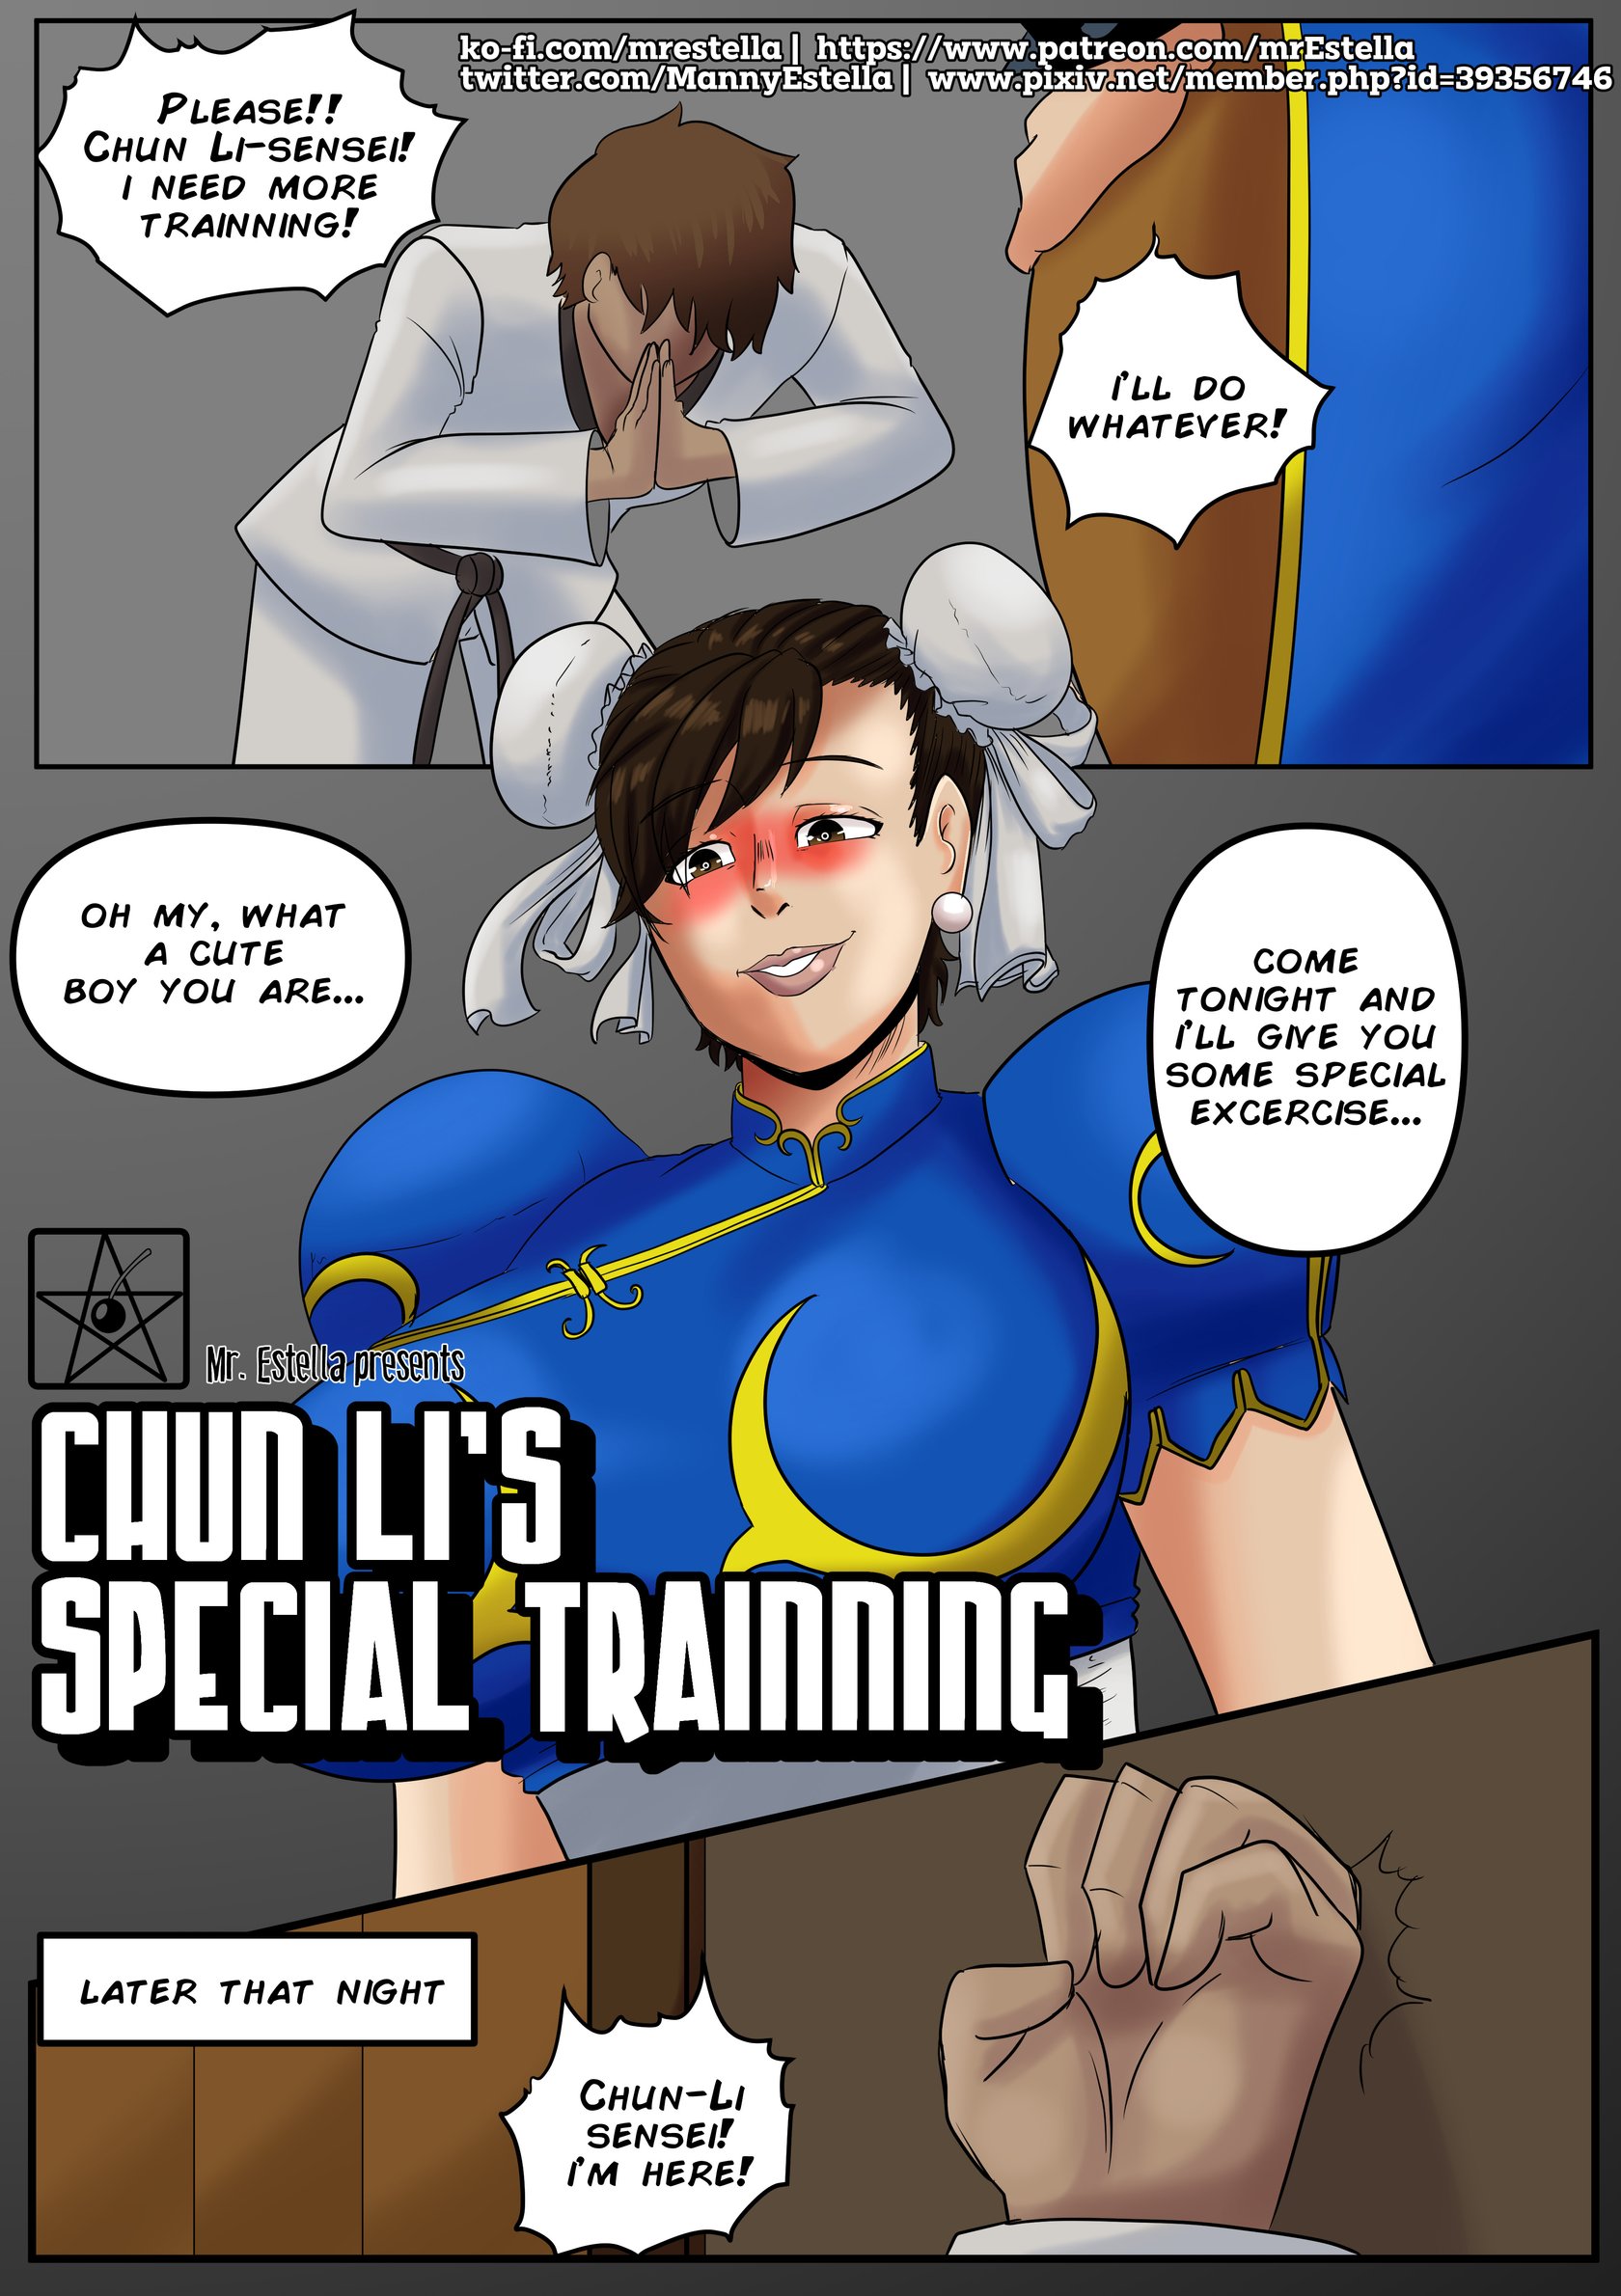 1680px x 2380px - Chun-Li's Special Training (Street Fighter) comic porn - HD Porn Comics